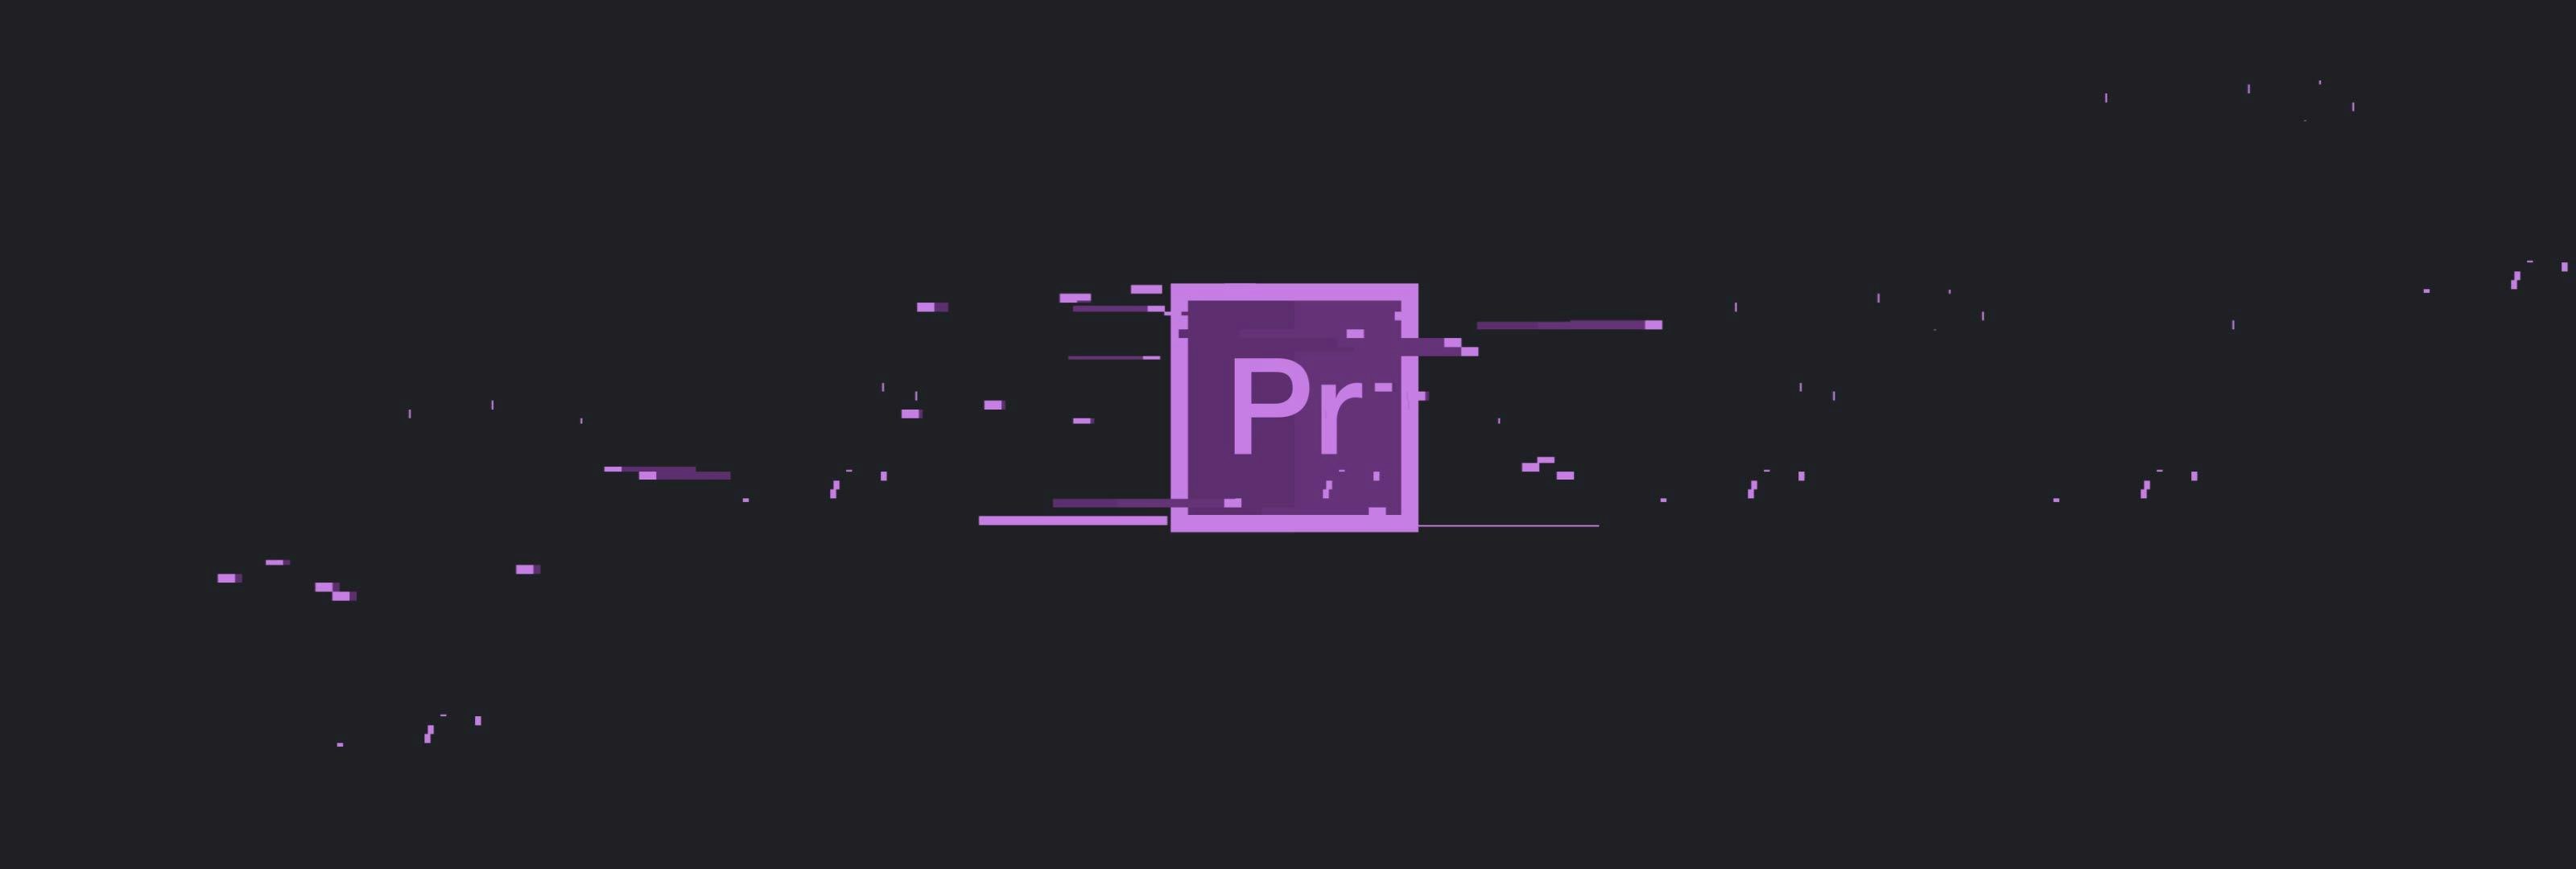 Adobe Premiere Pro Presets Download